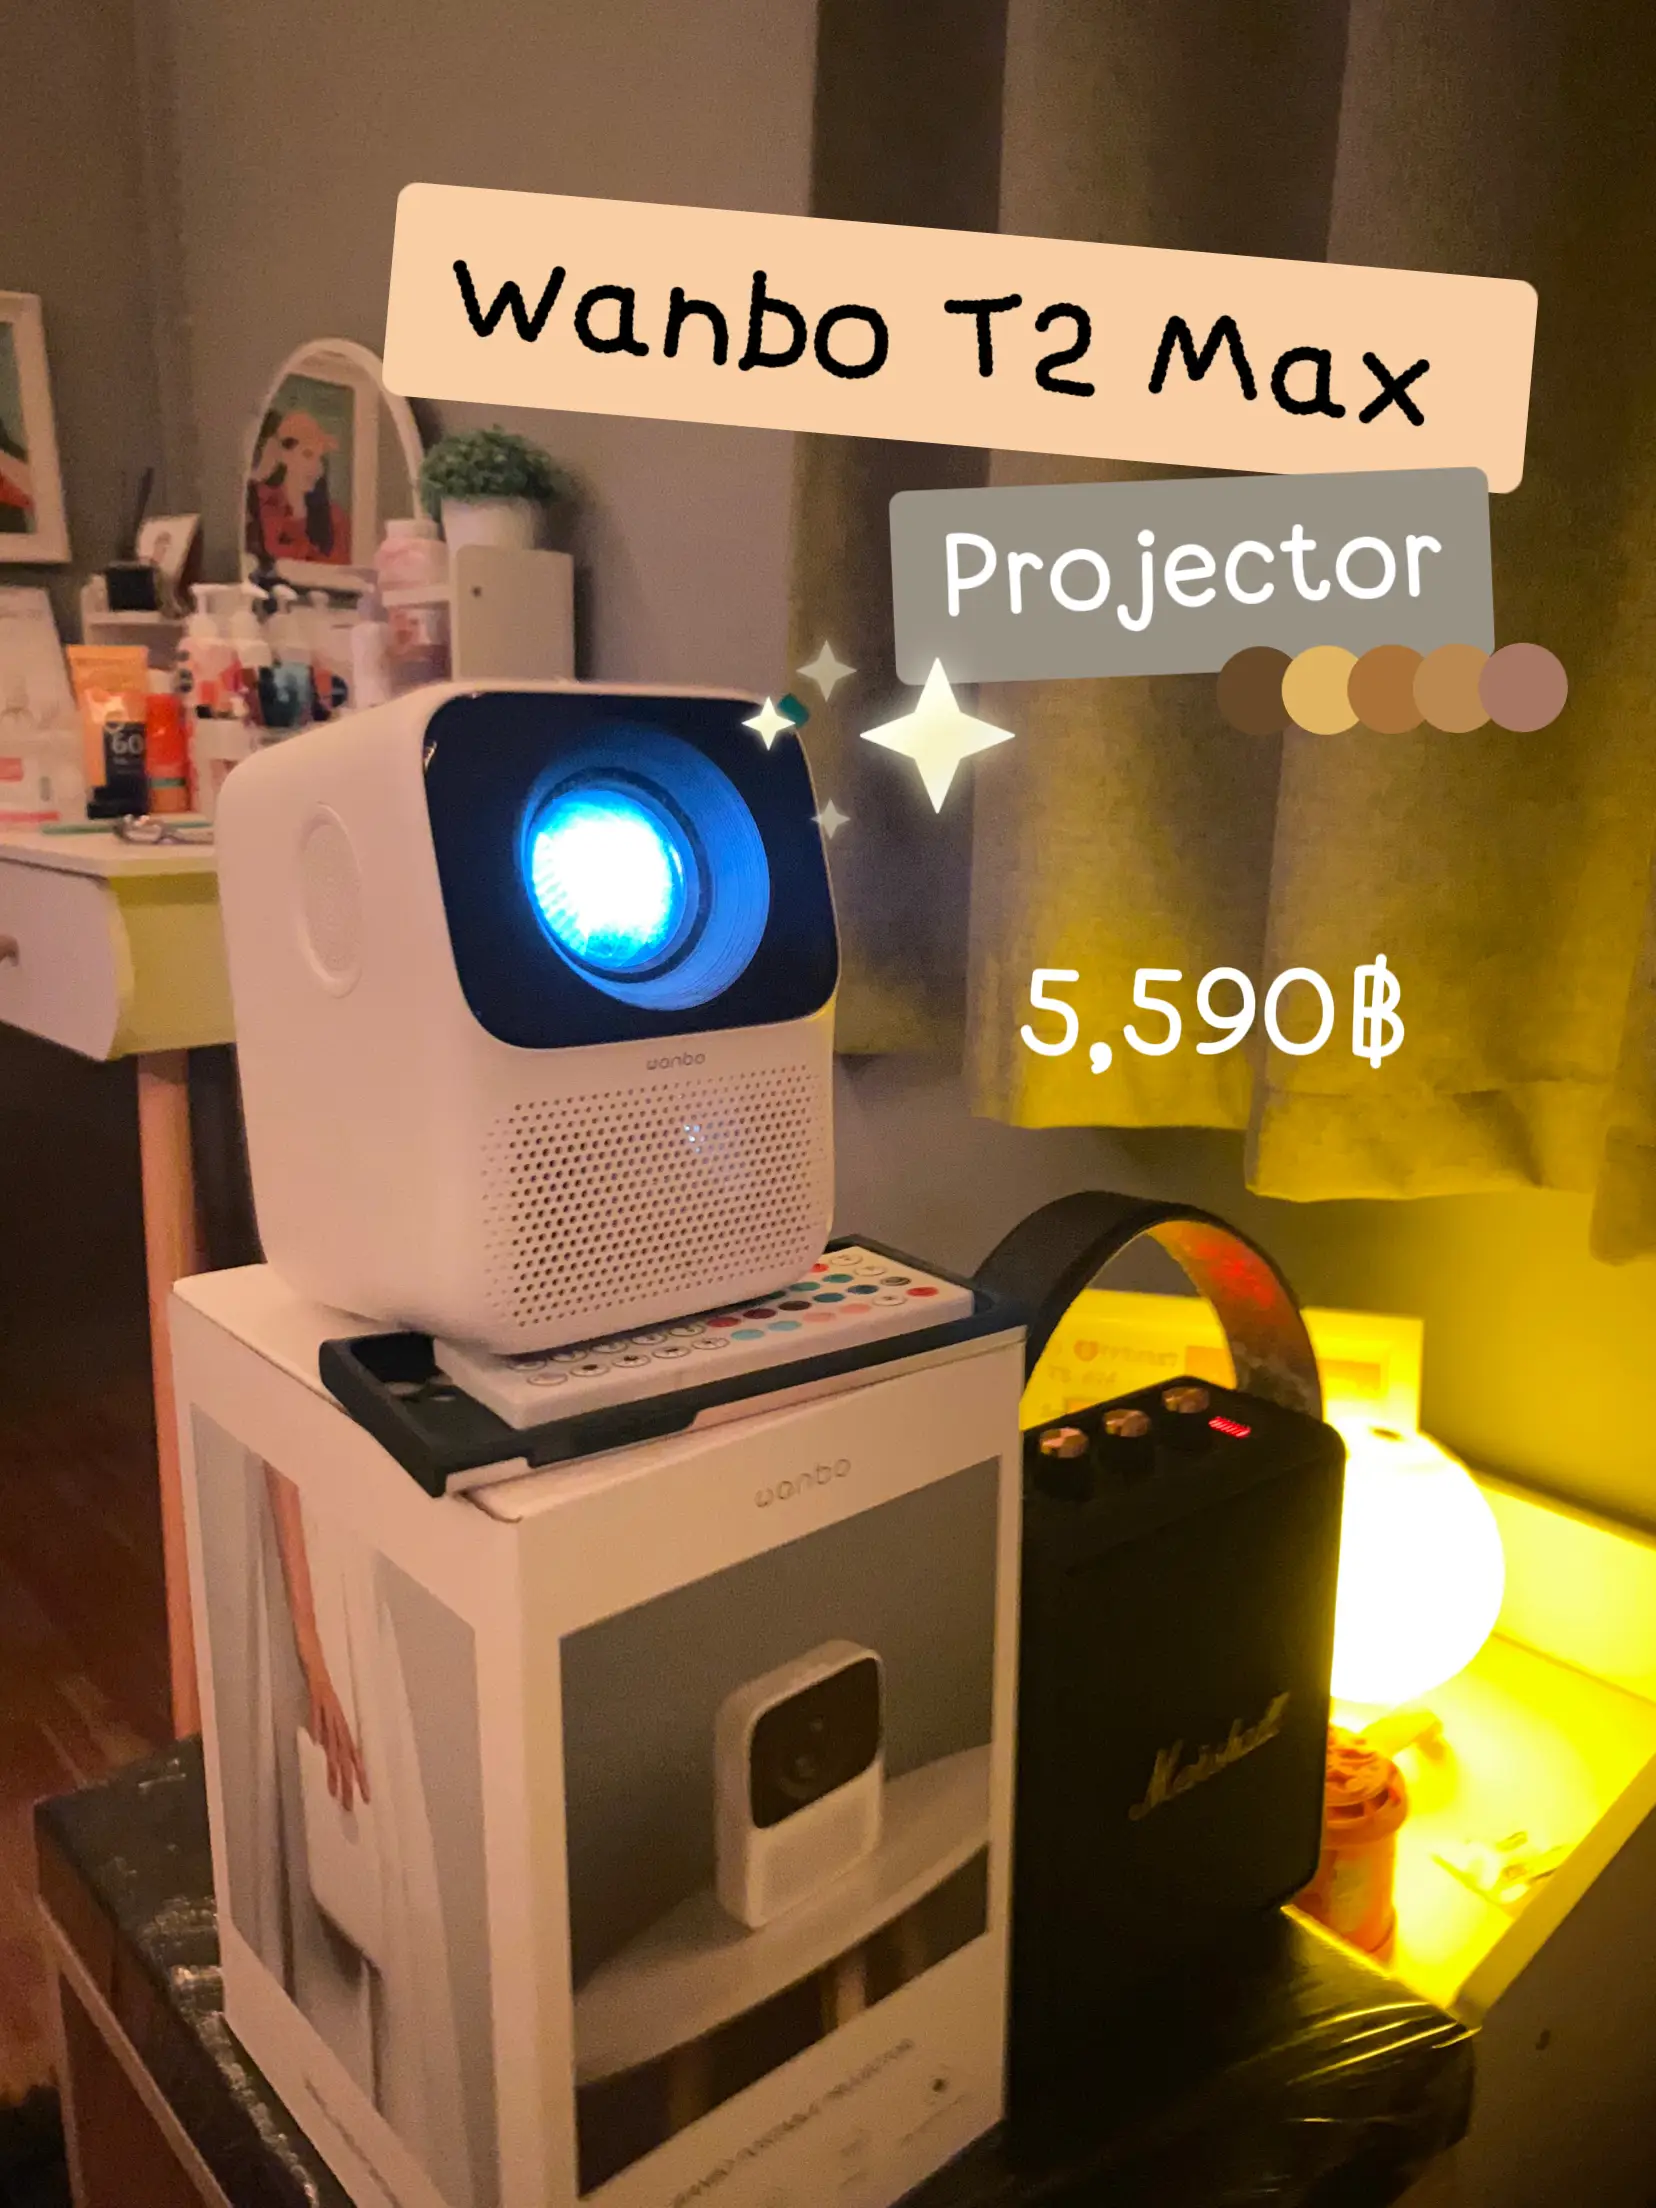 Wanbo T2 Max - REVIEW - HX MAGAZINE